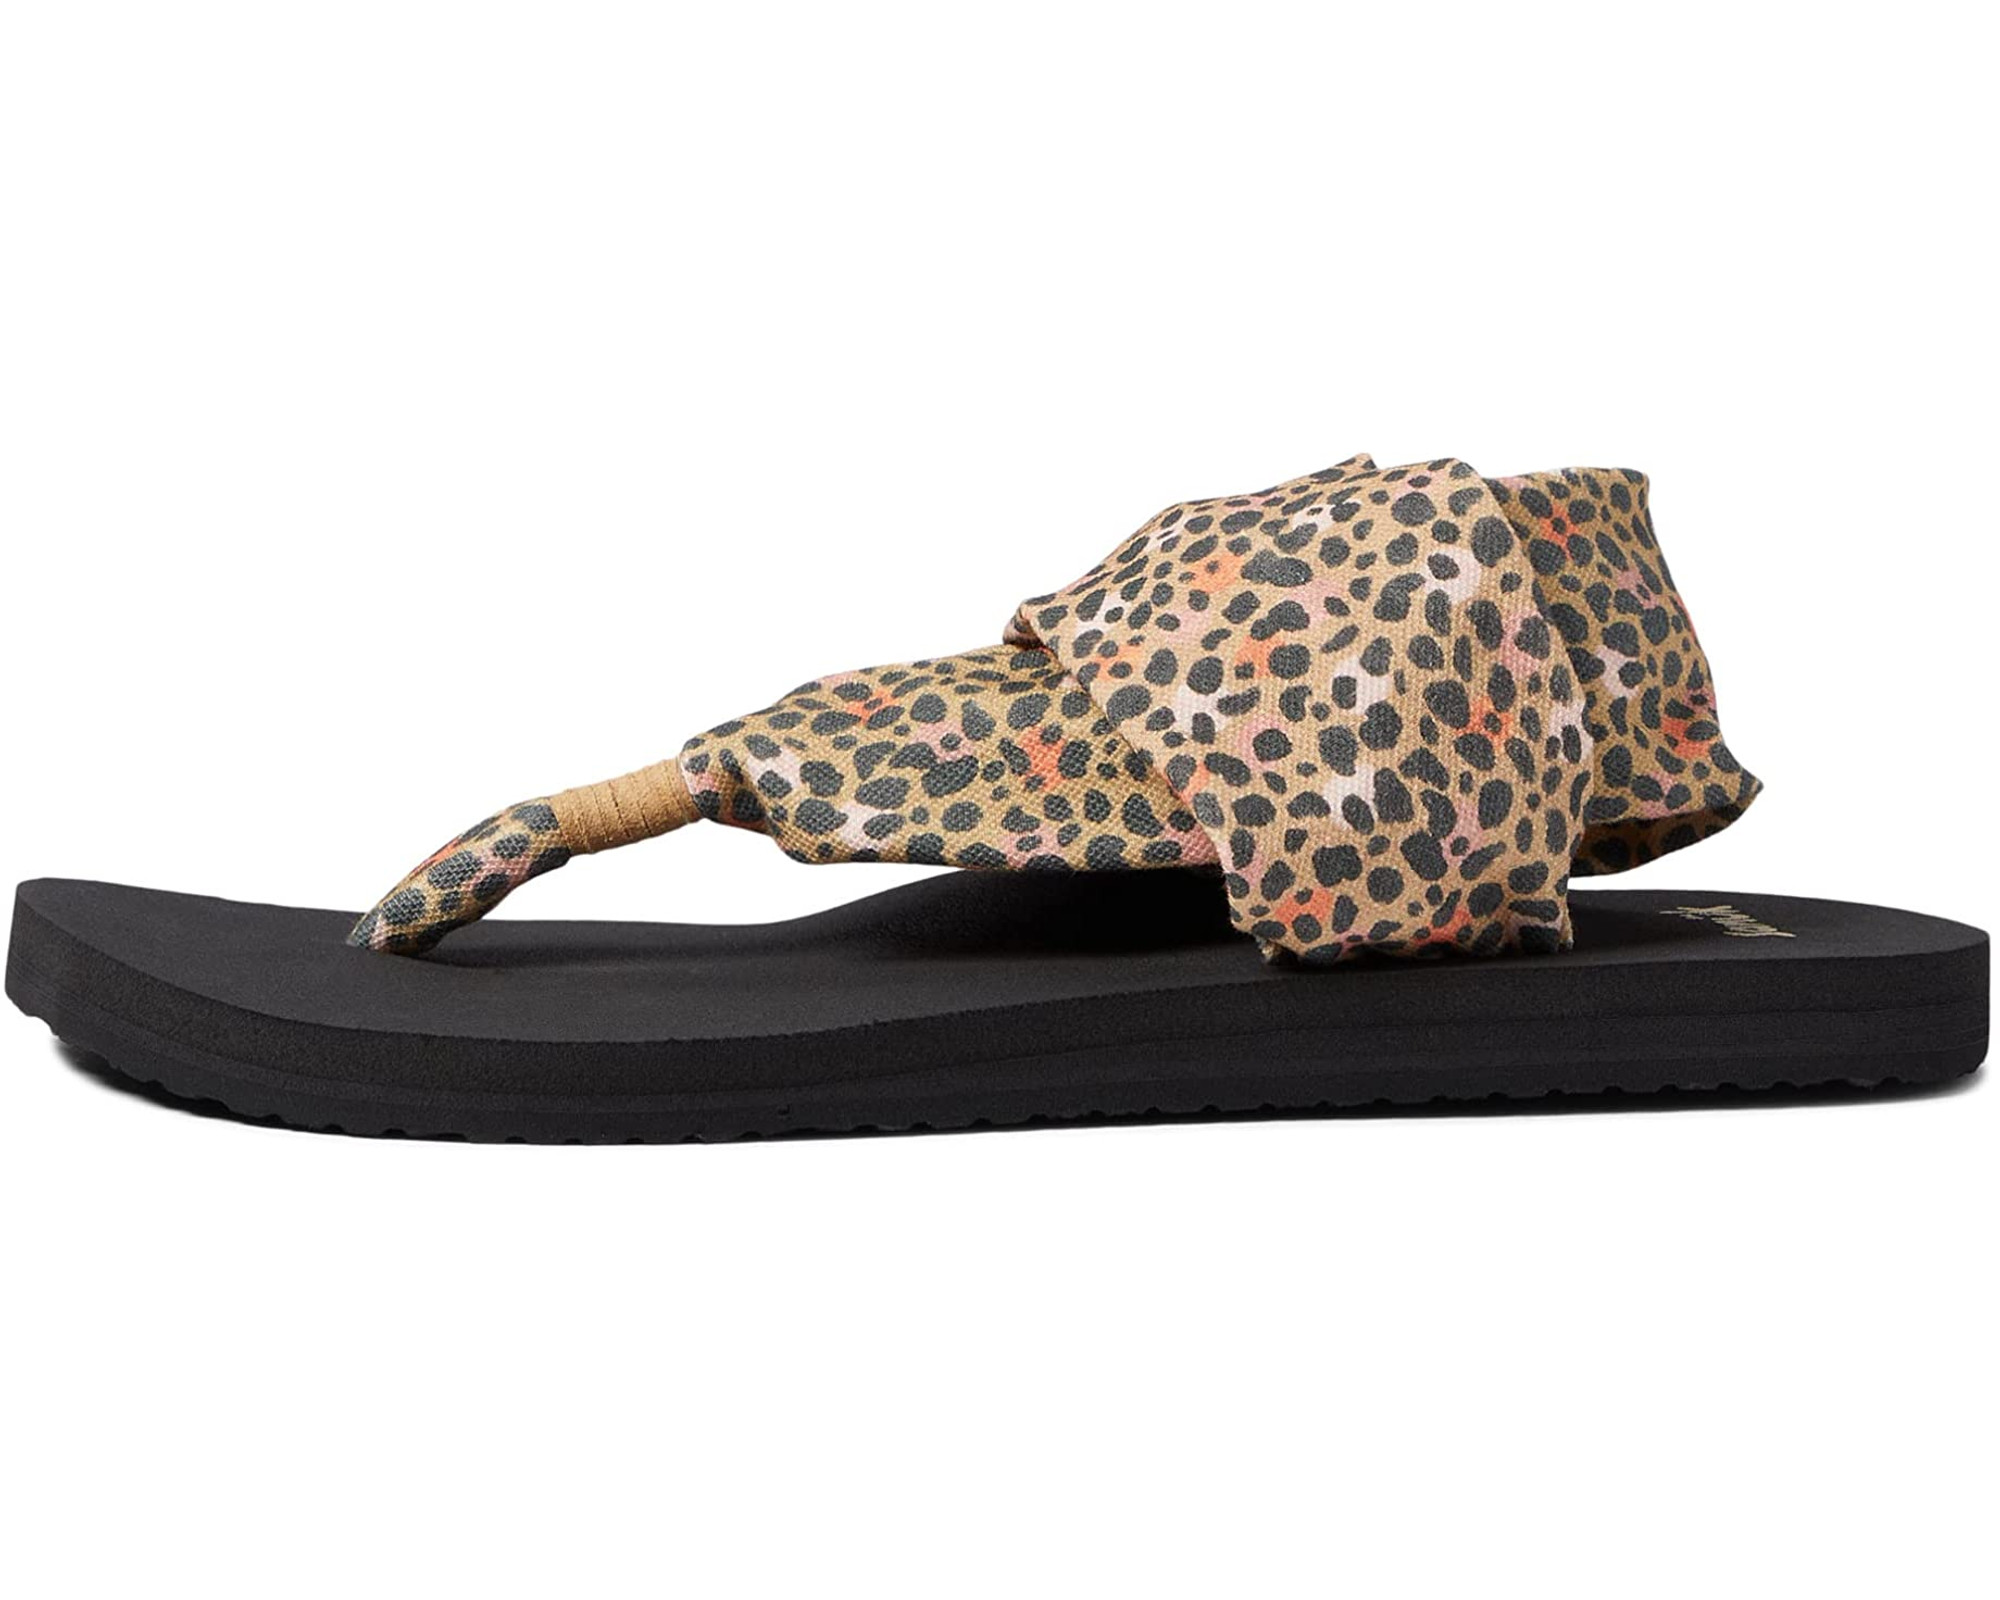  Sanuk Women's Lola Leopard Slide Sandal, 10